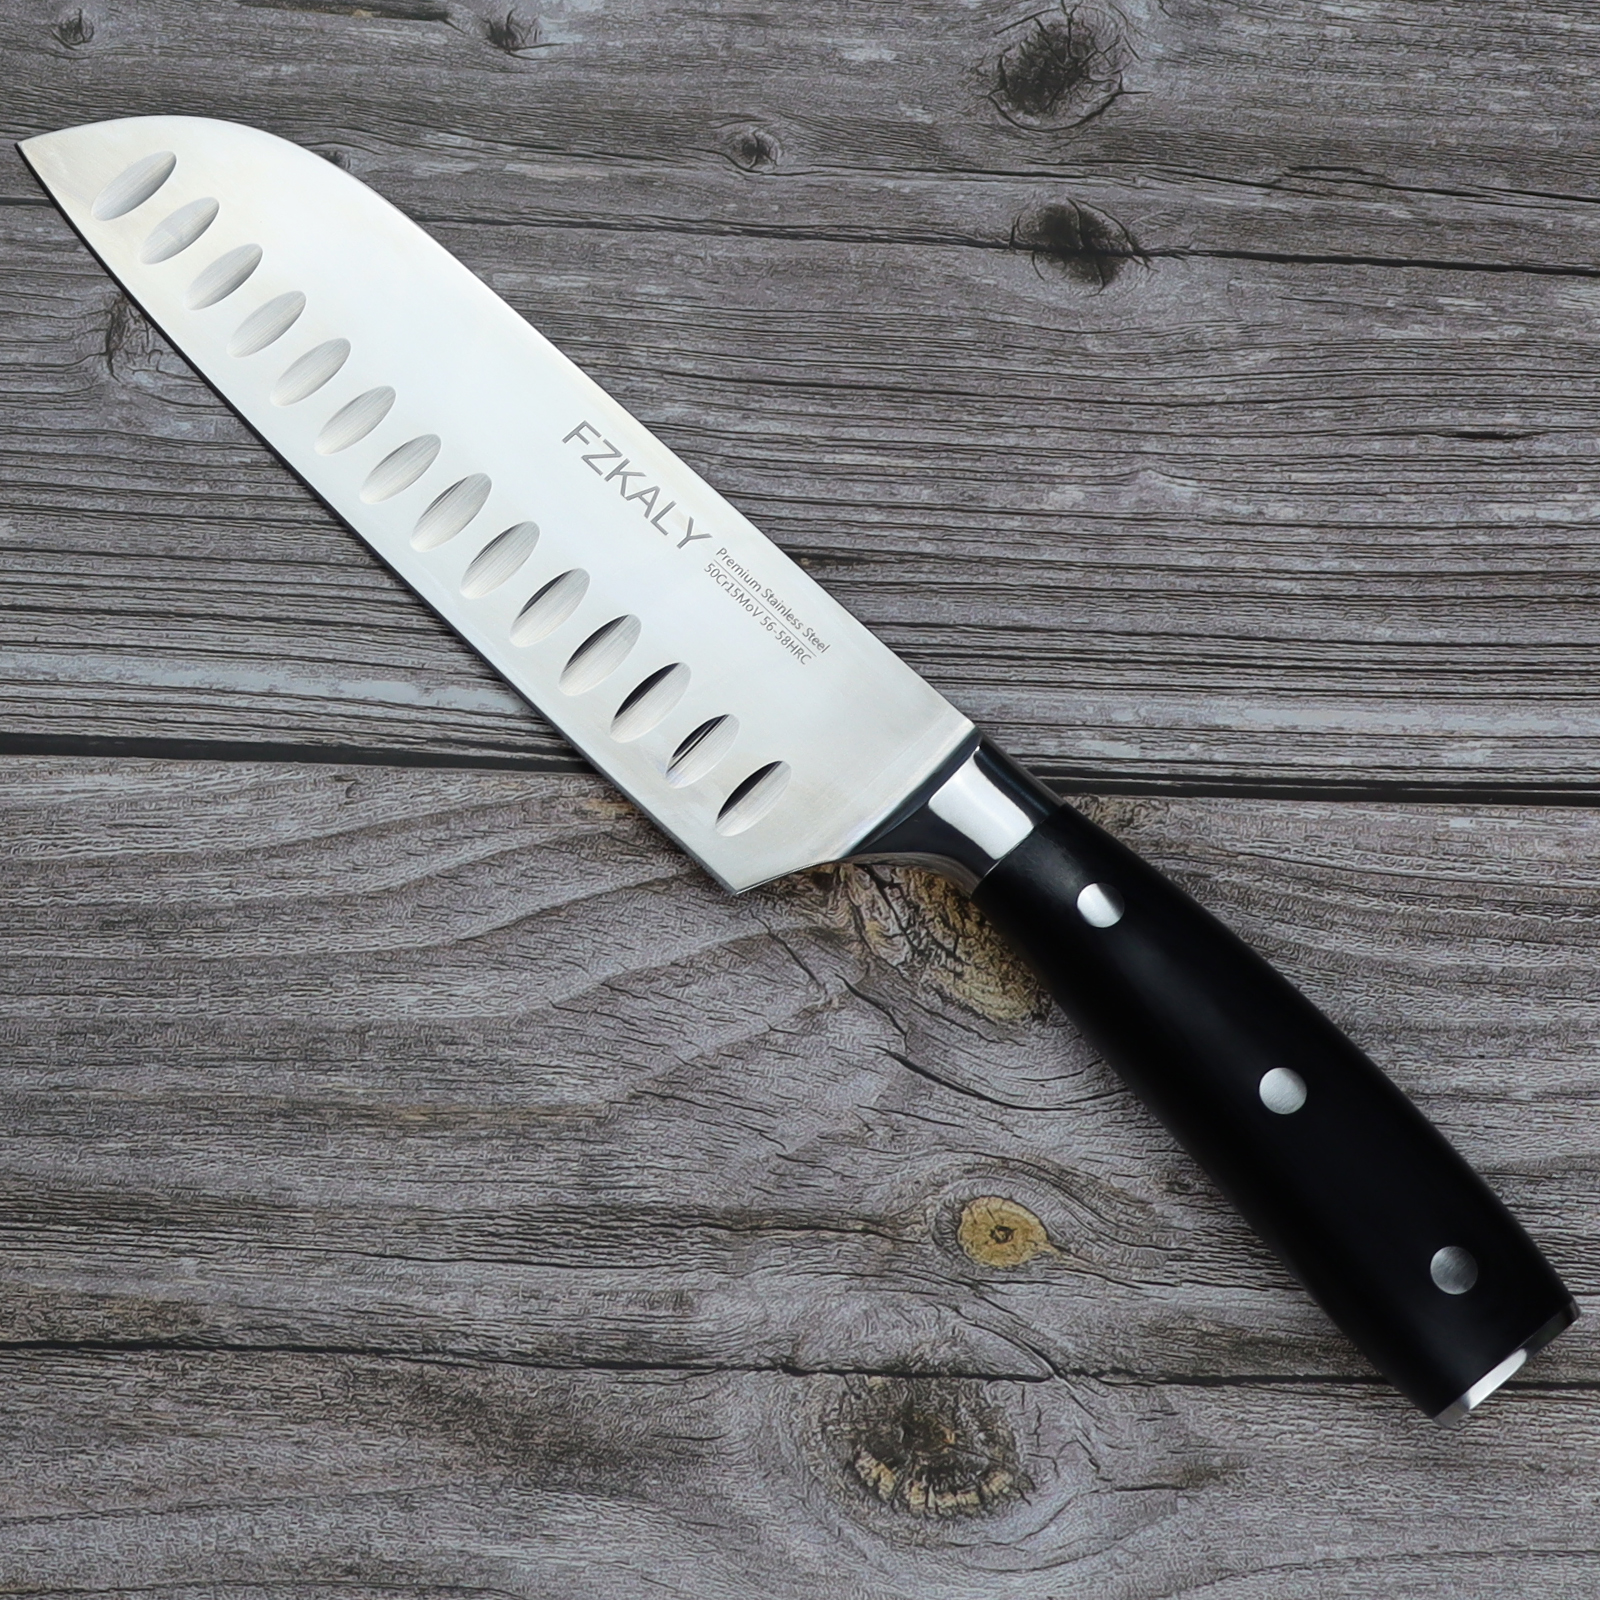 Chef Knives, Kitchen Knives, Fzkaly Knives